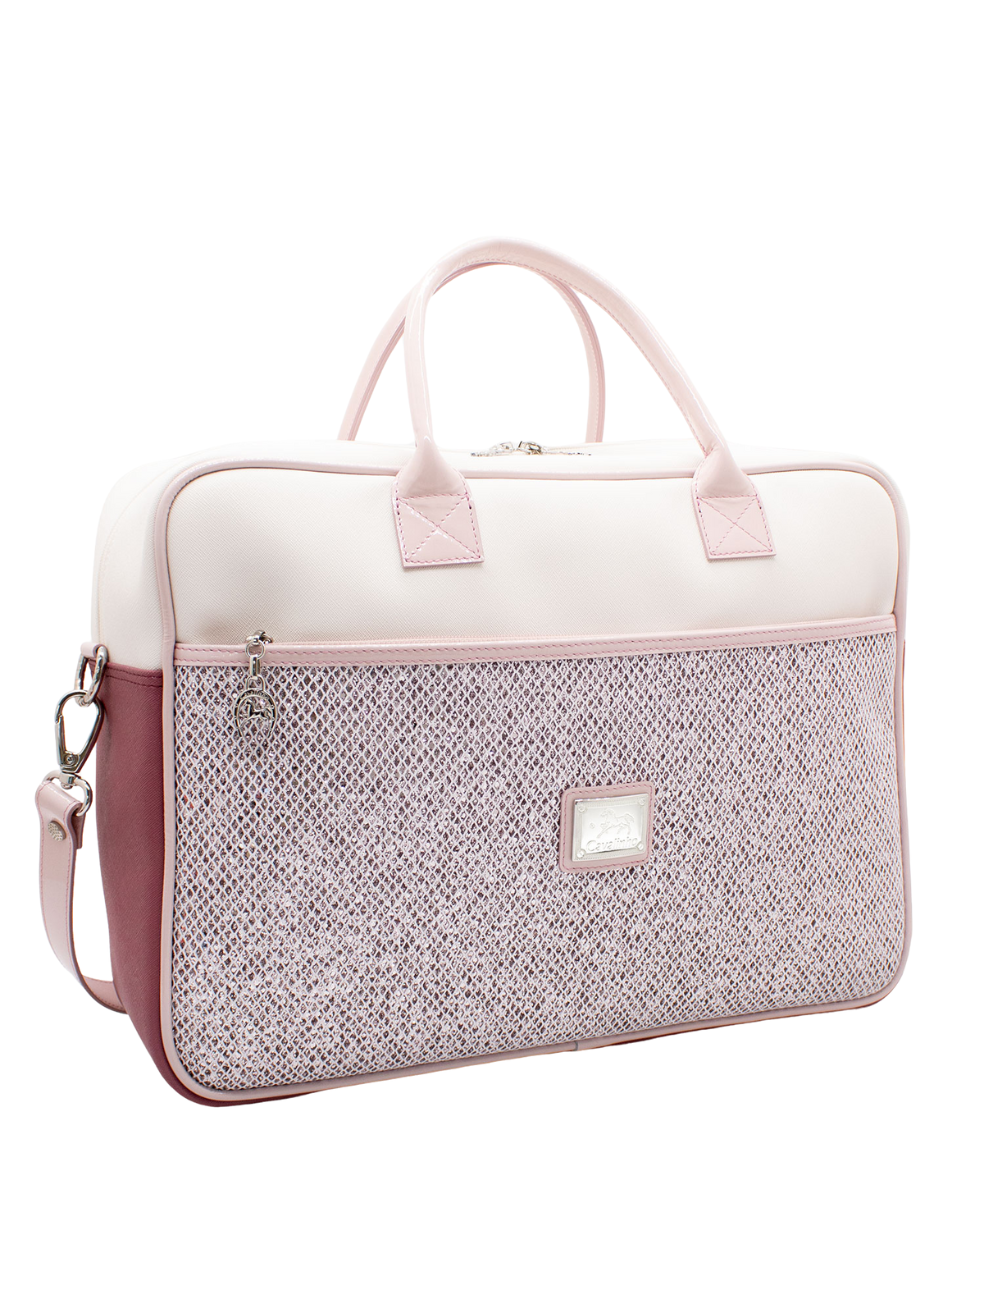 Cavalinho Radiance Baby Bag SKU 18680289.18 #color_White / Pink